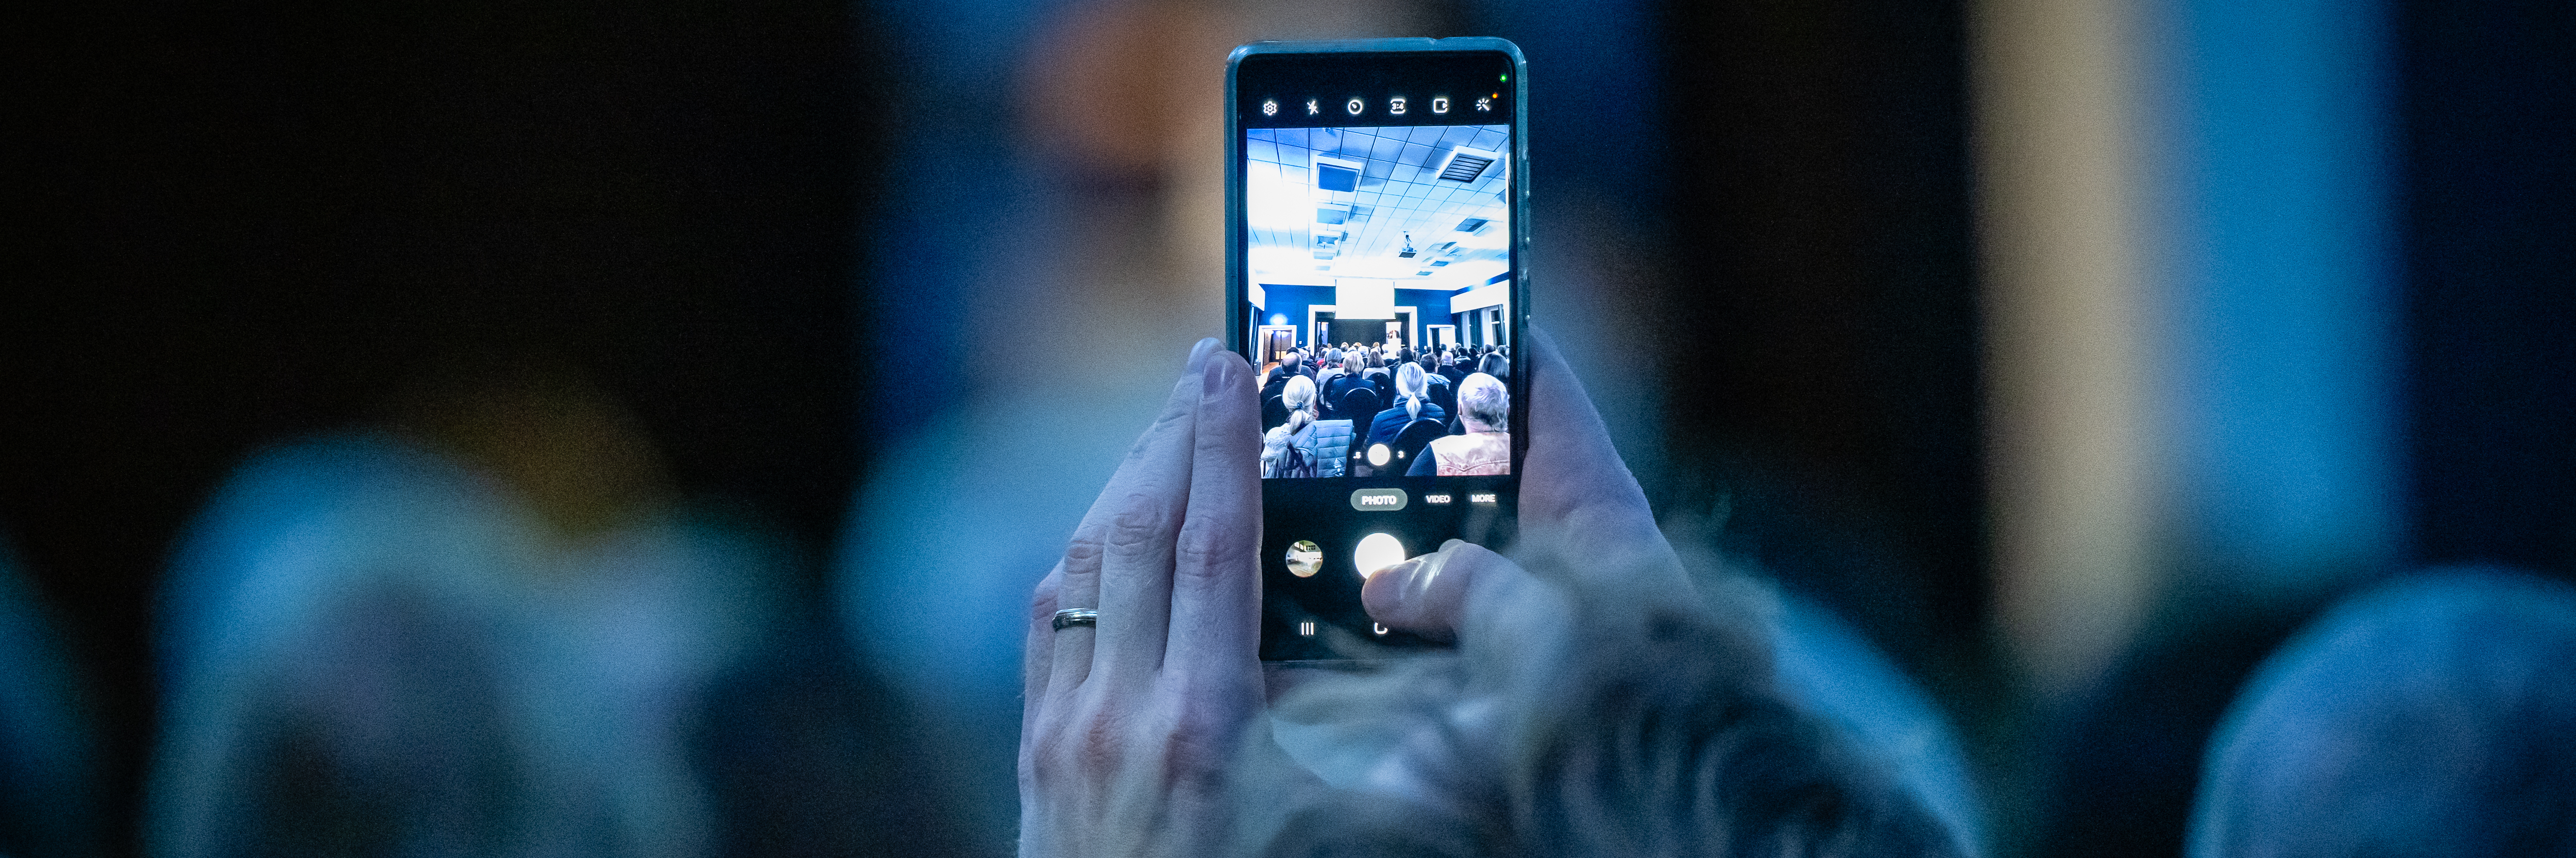 Das Bild zeigt einen Veranstaltungsraum mit Publikum. Eine Person hält ihr Handy in die Höhe und fotografiert die Bühne. 